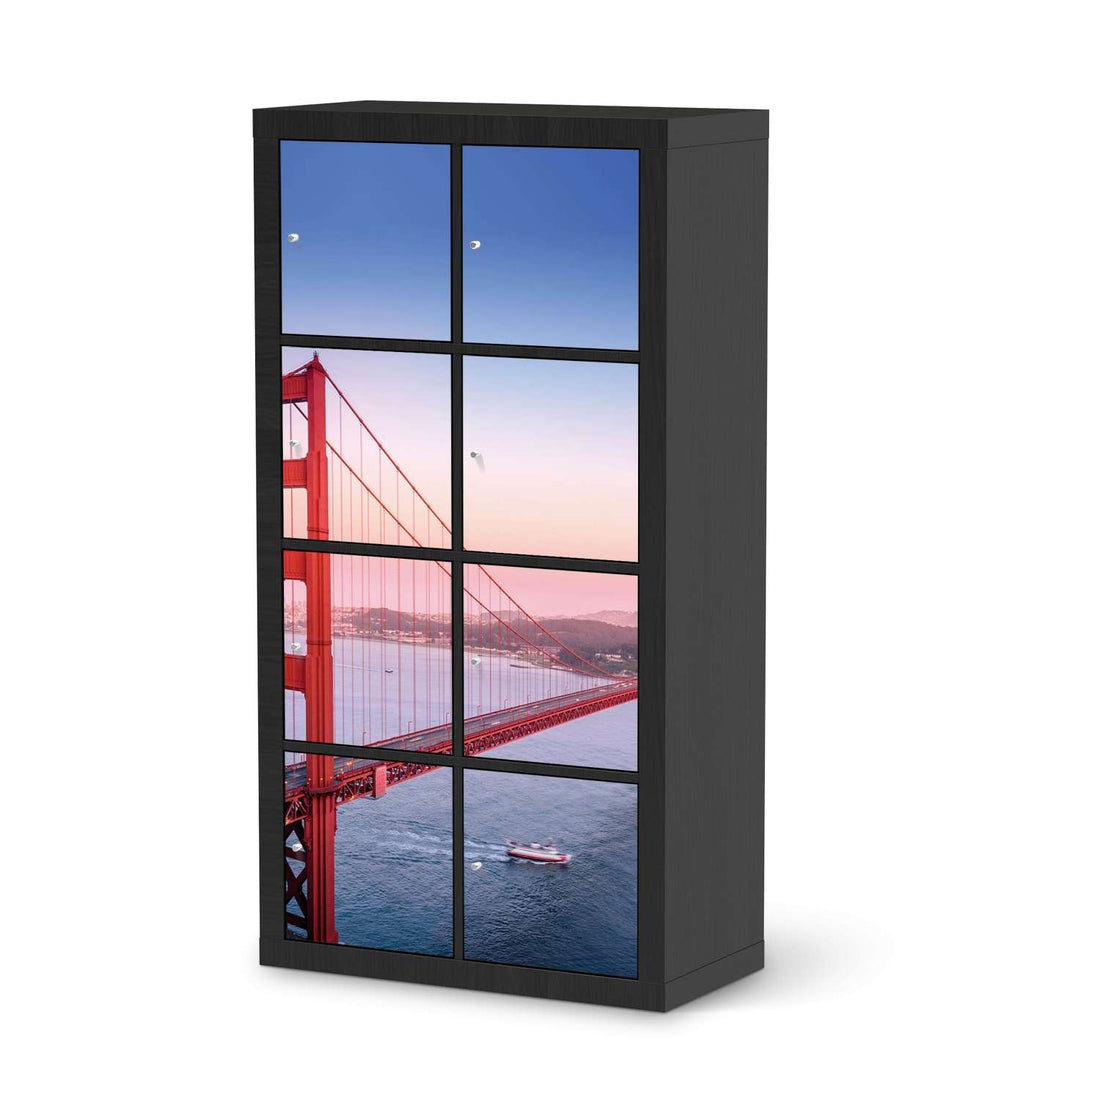 Folie für Möbel Golden Gate - IKEA Kallax Regal 8 Türen - schwarz